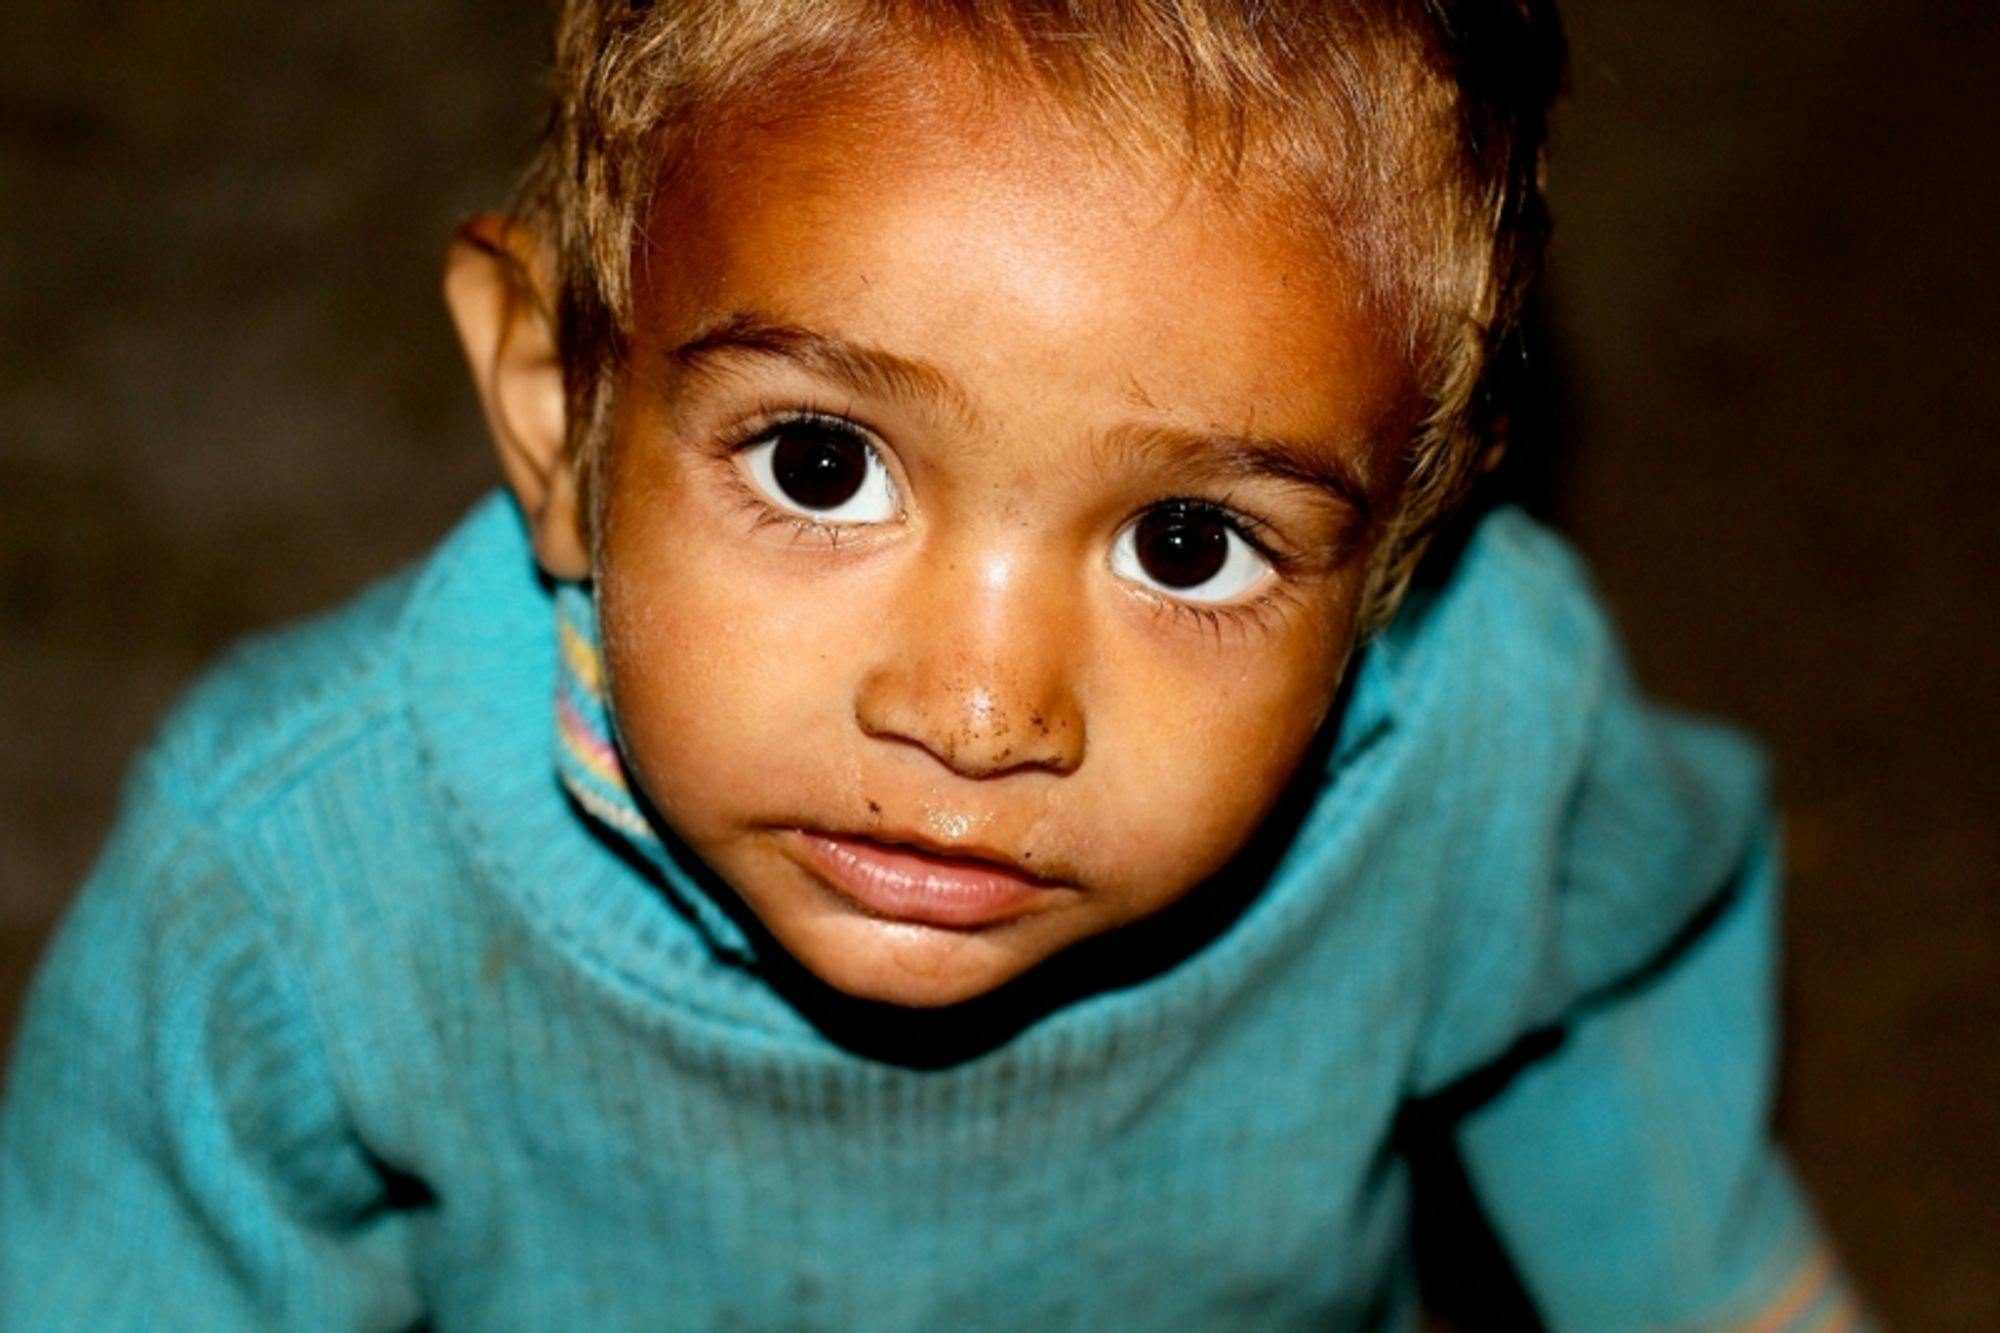 段ボールで生活する家族の子供。インドの子どもたちは、目の力が強く感じた。